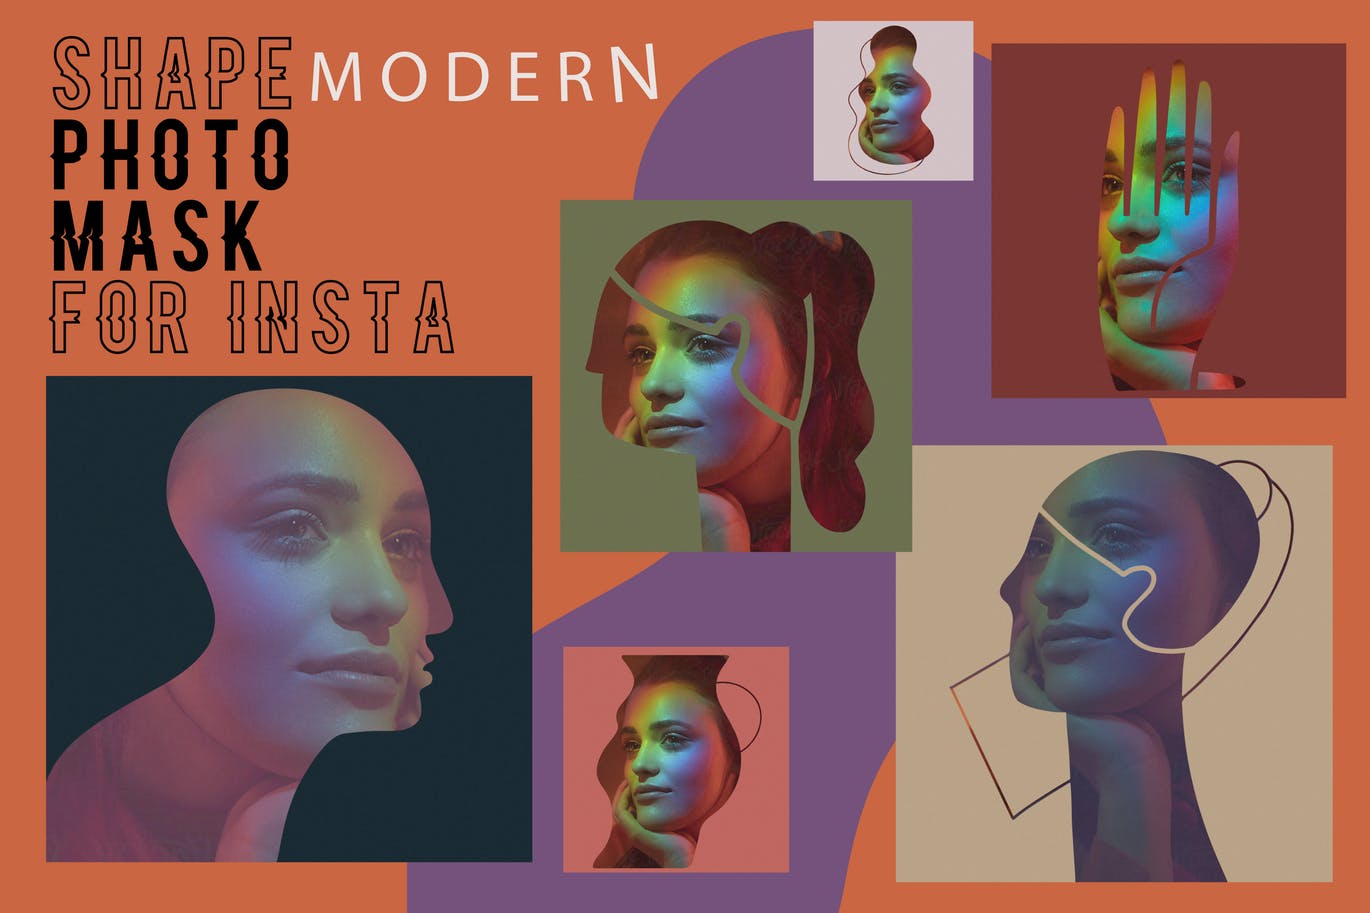 现代艺术剪影风格Instagram贴图设计PSD模板16图库精选 Modern shape photo mask for Insta插图